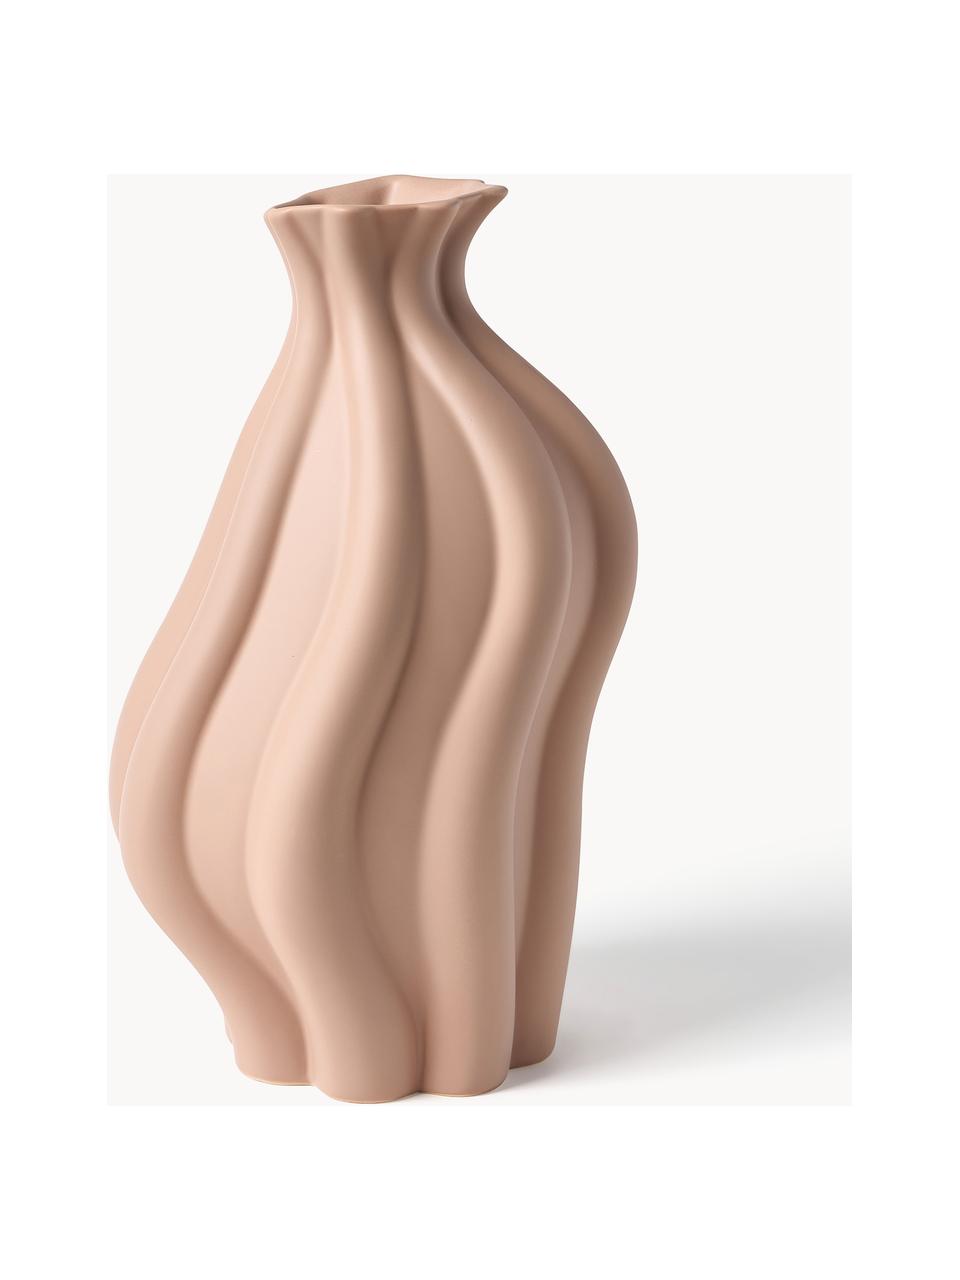 Wazon z ceramiki Blom, W 33 cm, Ceramika, Brzoskwiniowy, S 19 x W 33 cm